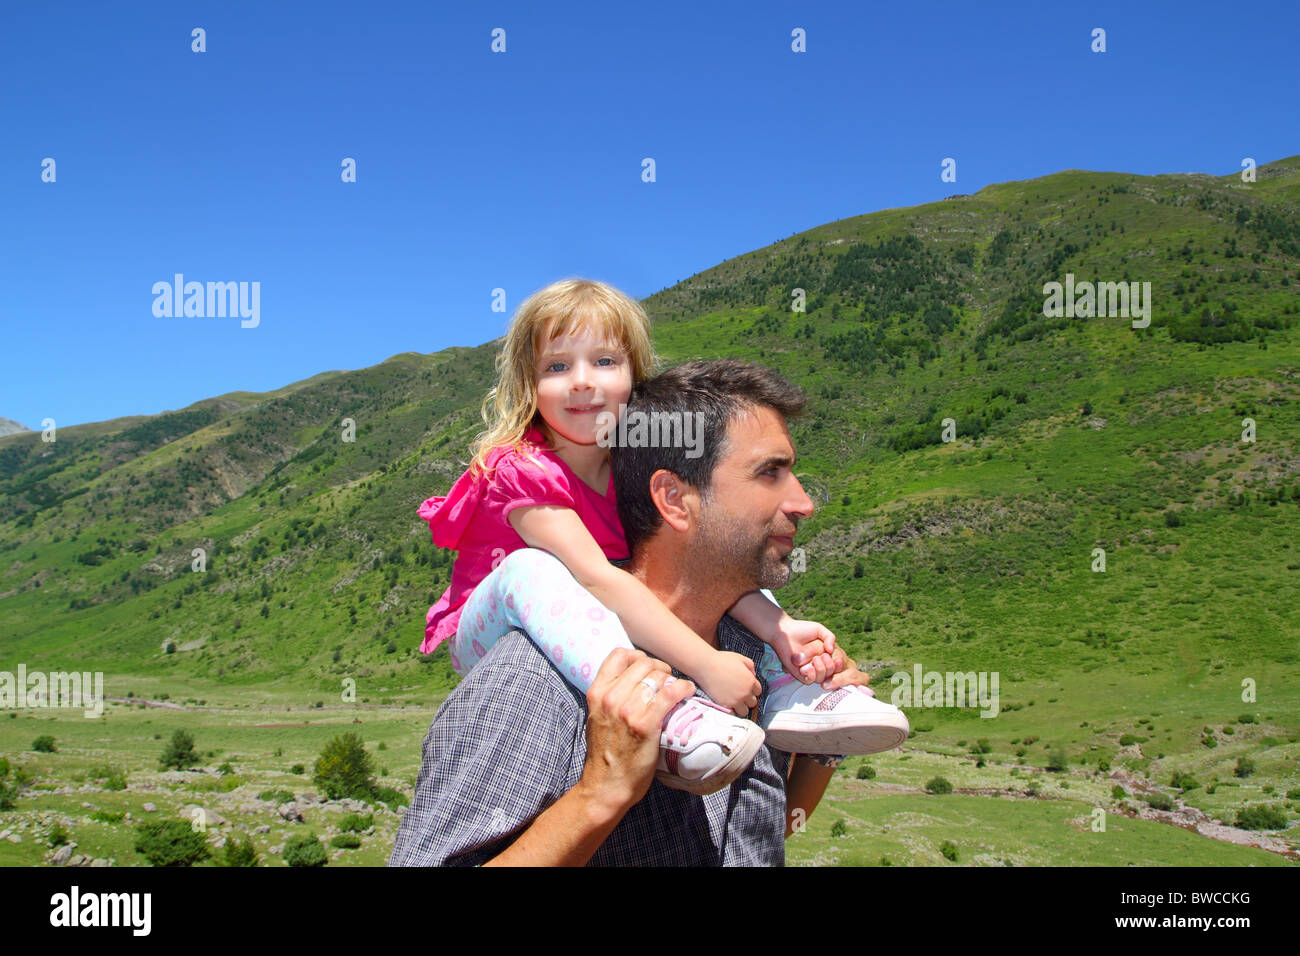 Explorer mountain bambina e padre in verde all'aperto panorama della valle Foto Stock